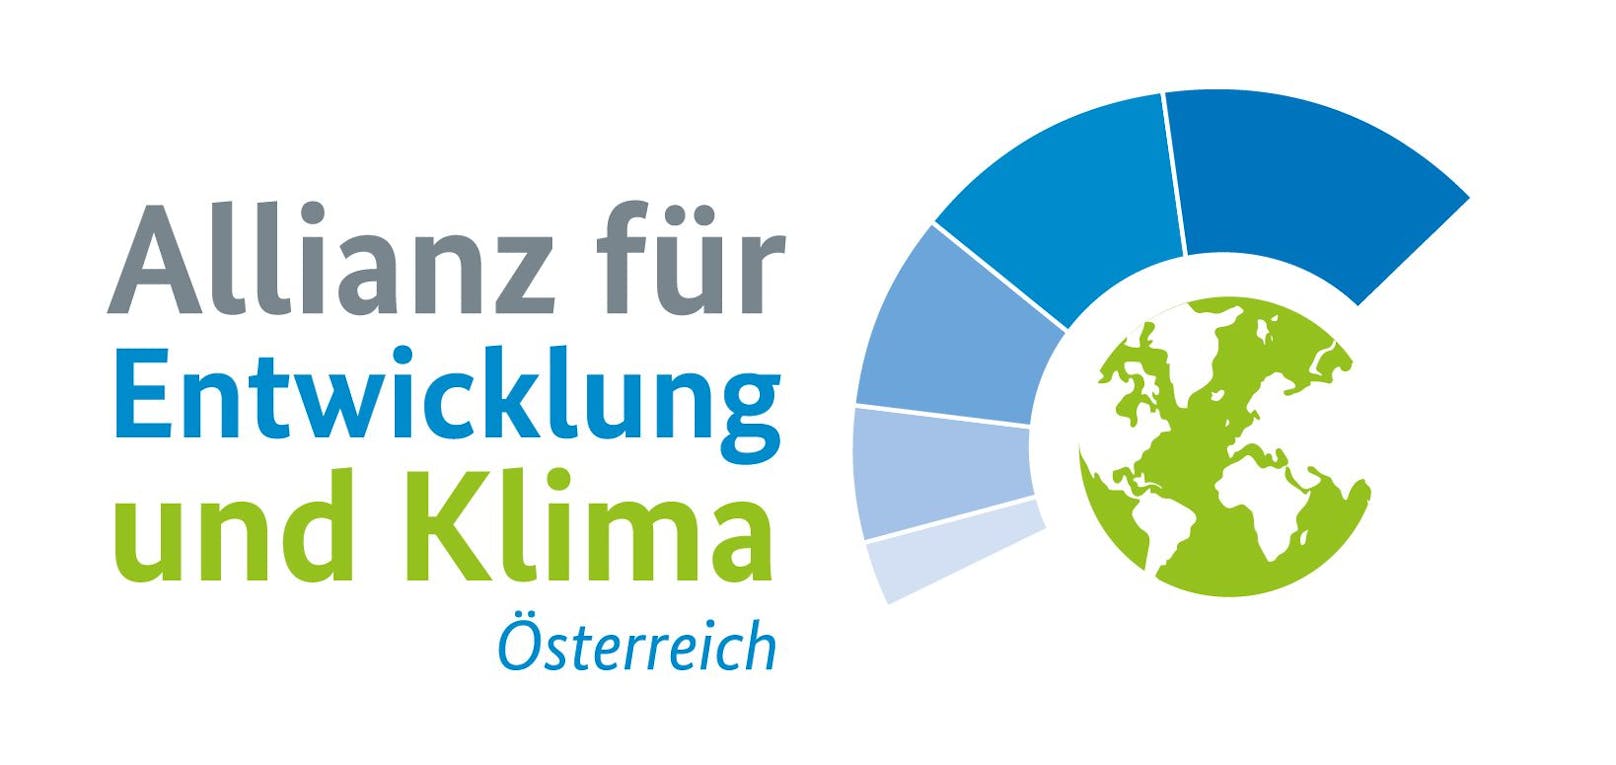 Beko Grundig Österreich AG wird Unterstützerin der Allianz für Entwicklung und Klima in Österreich.